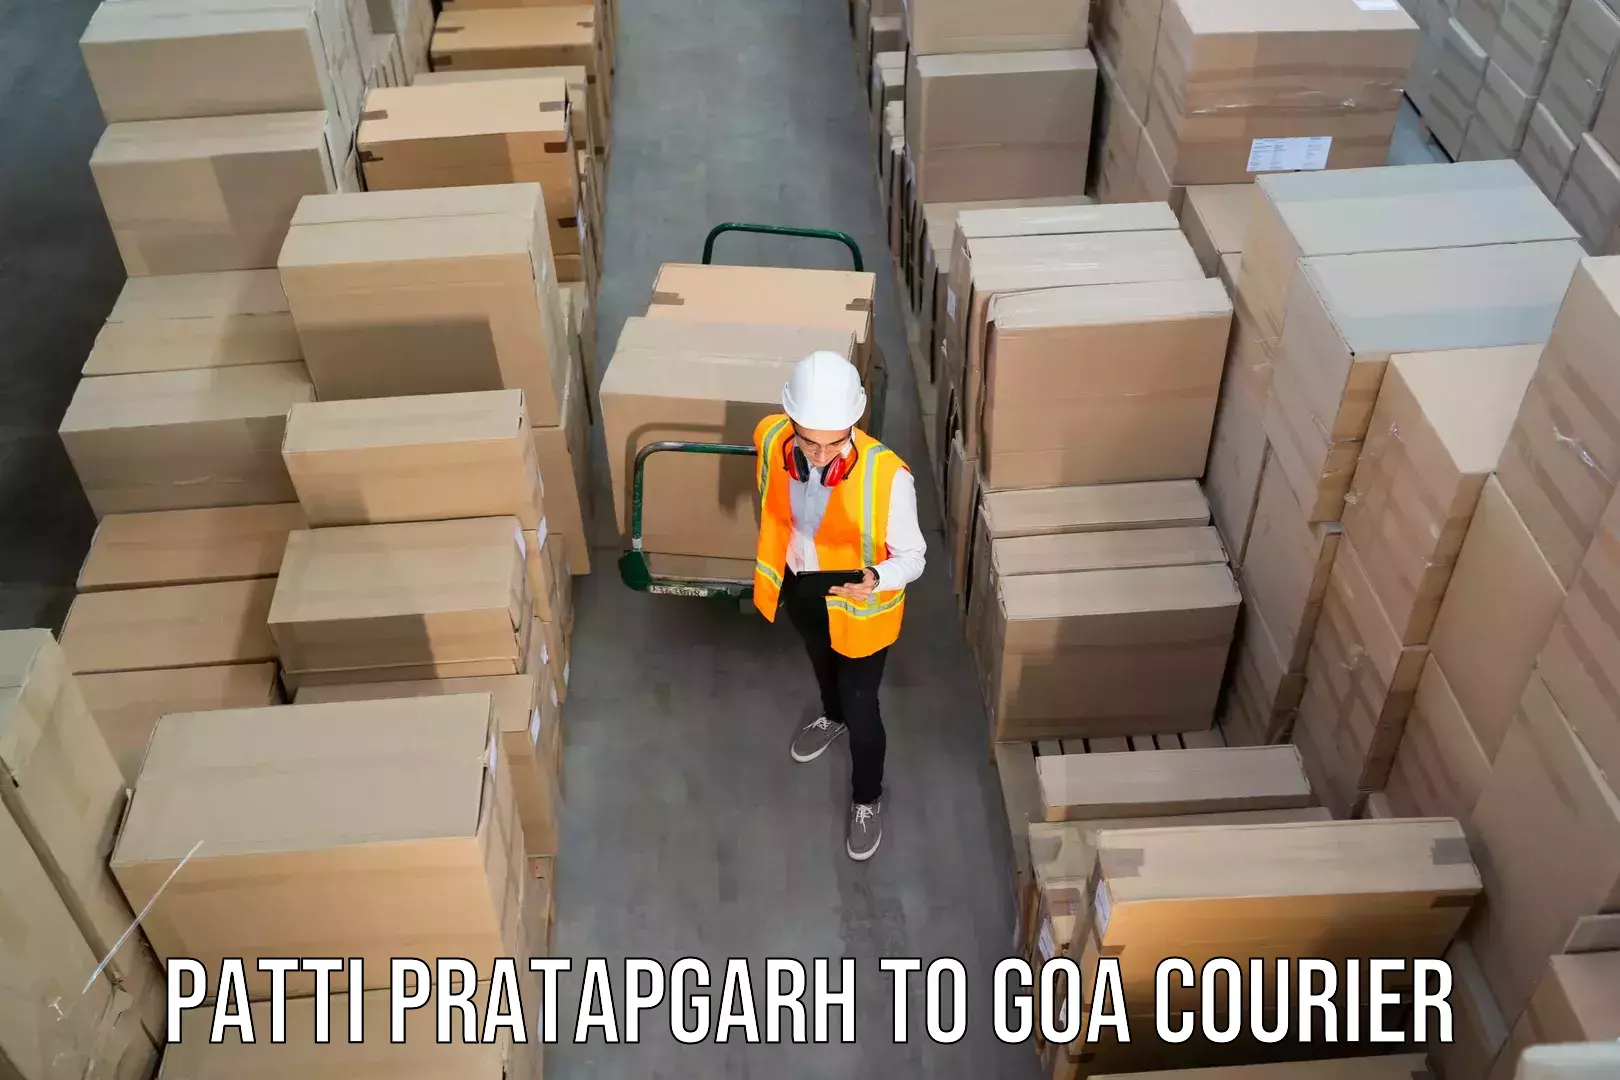 Modern courier technology Patti Pratapgarh to Bicholim